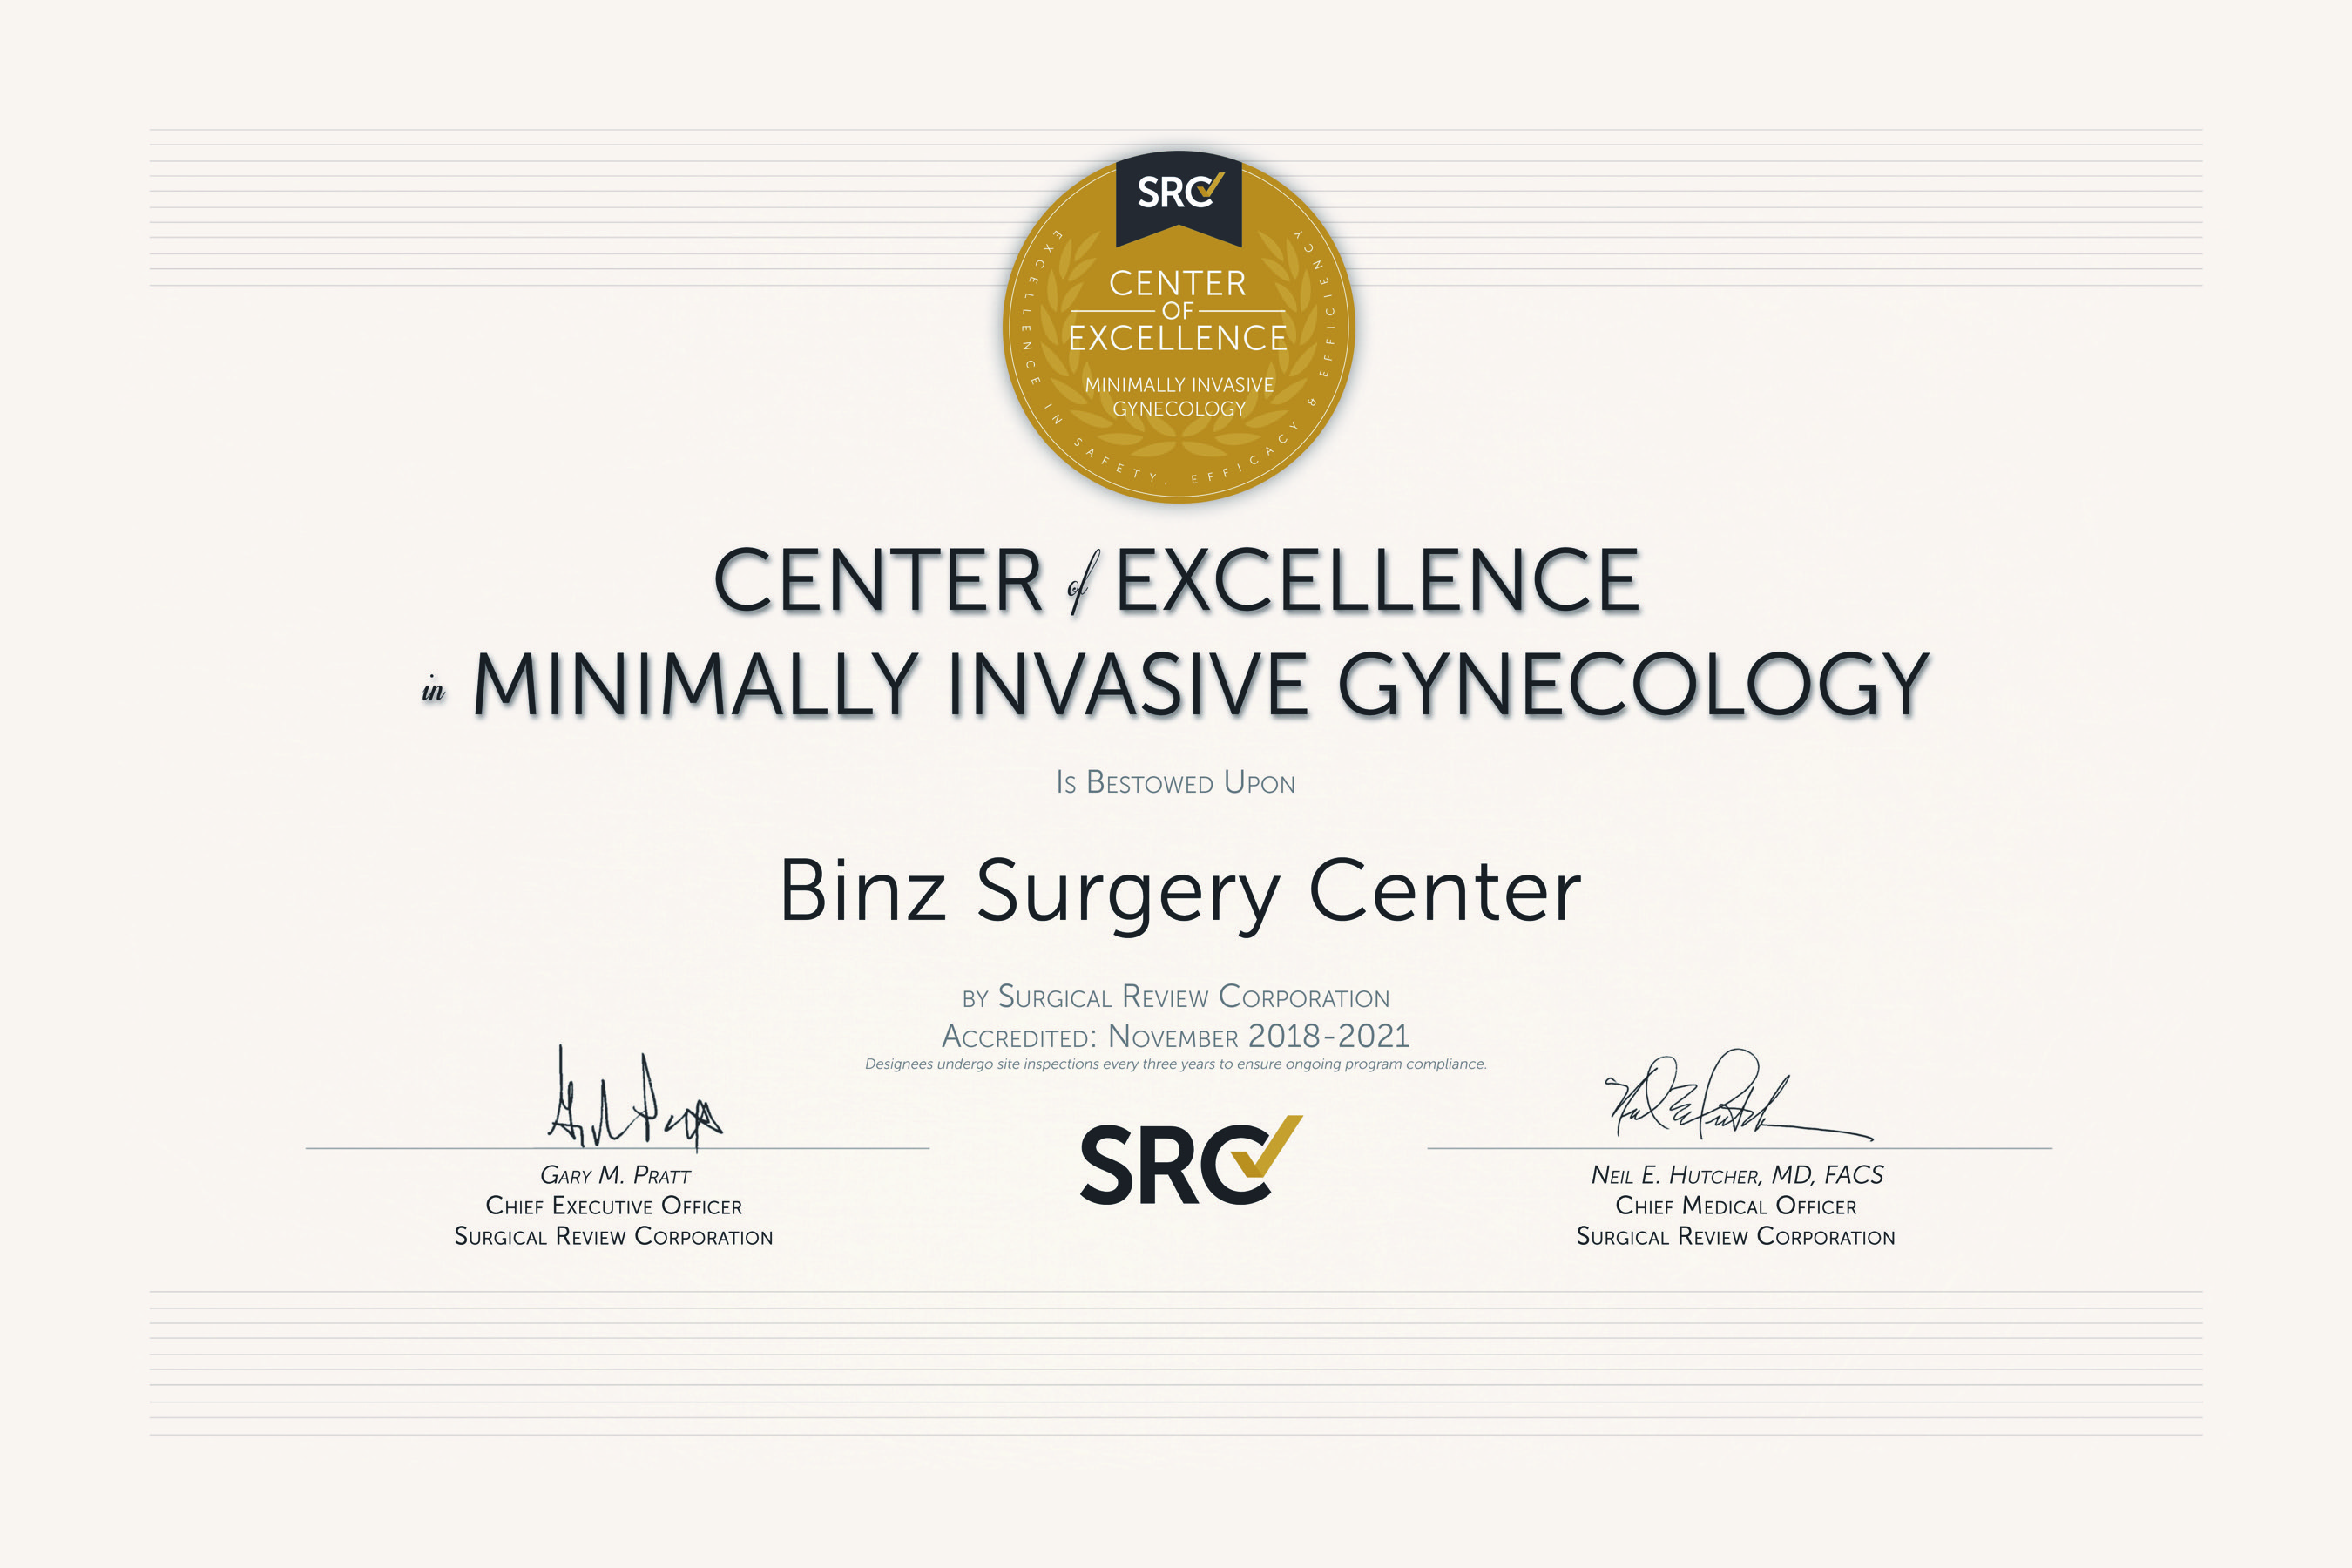 Binz Surgery Center | Urology Services